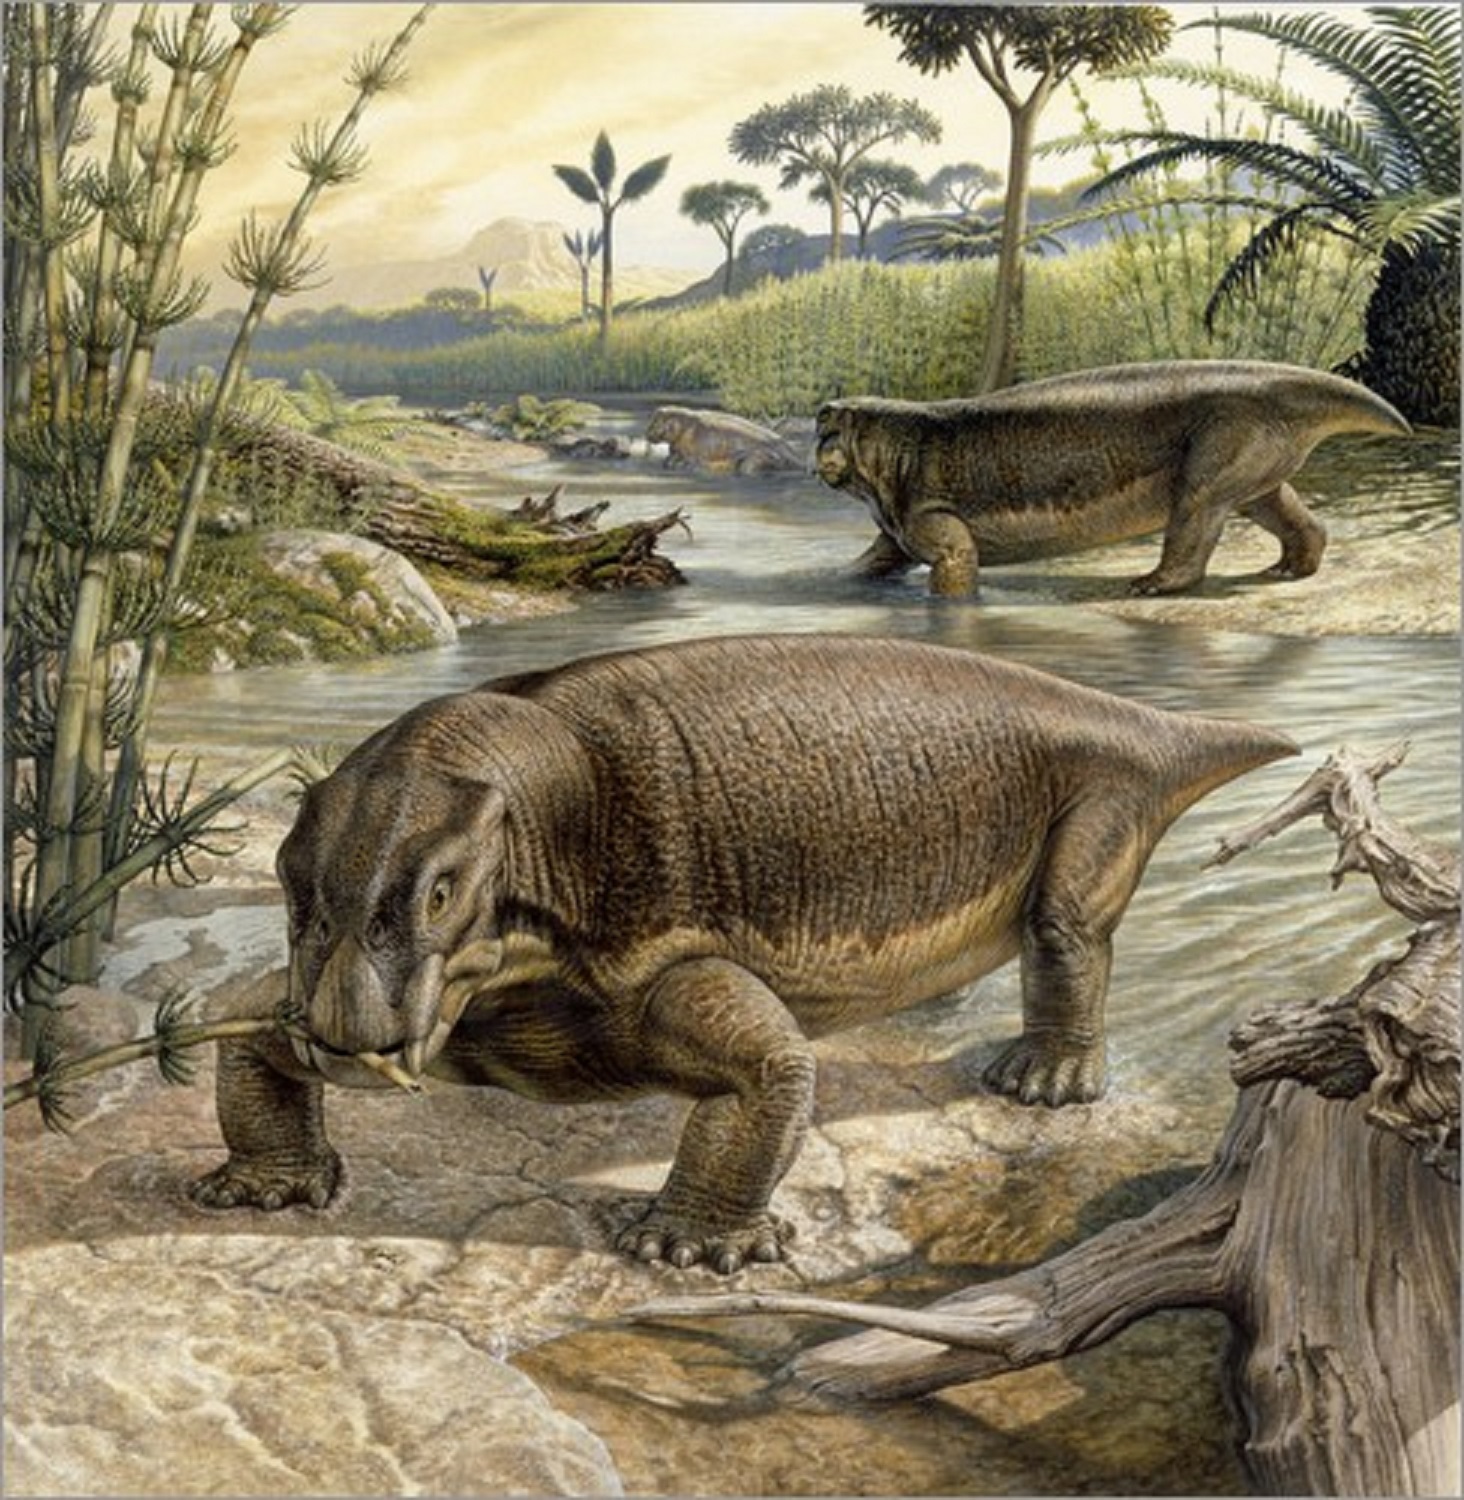 Lystrosaurus: is an extinct genus of dicinodontos therapsid Triassic period